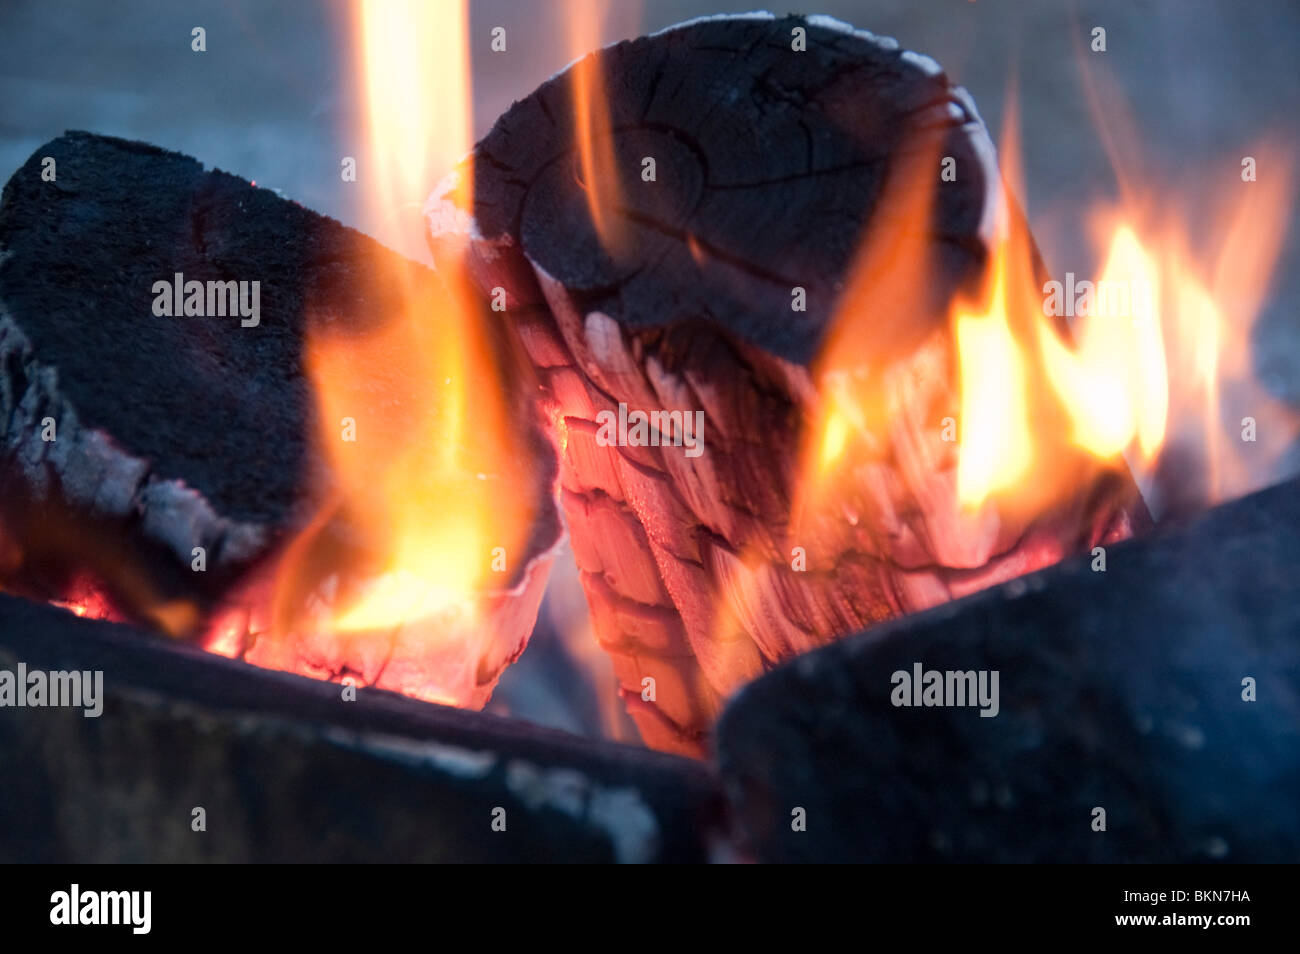 Ein brennendes Feuer in einer Feuerstelle Stockfoto